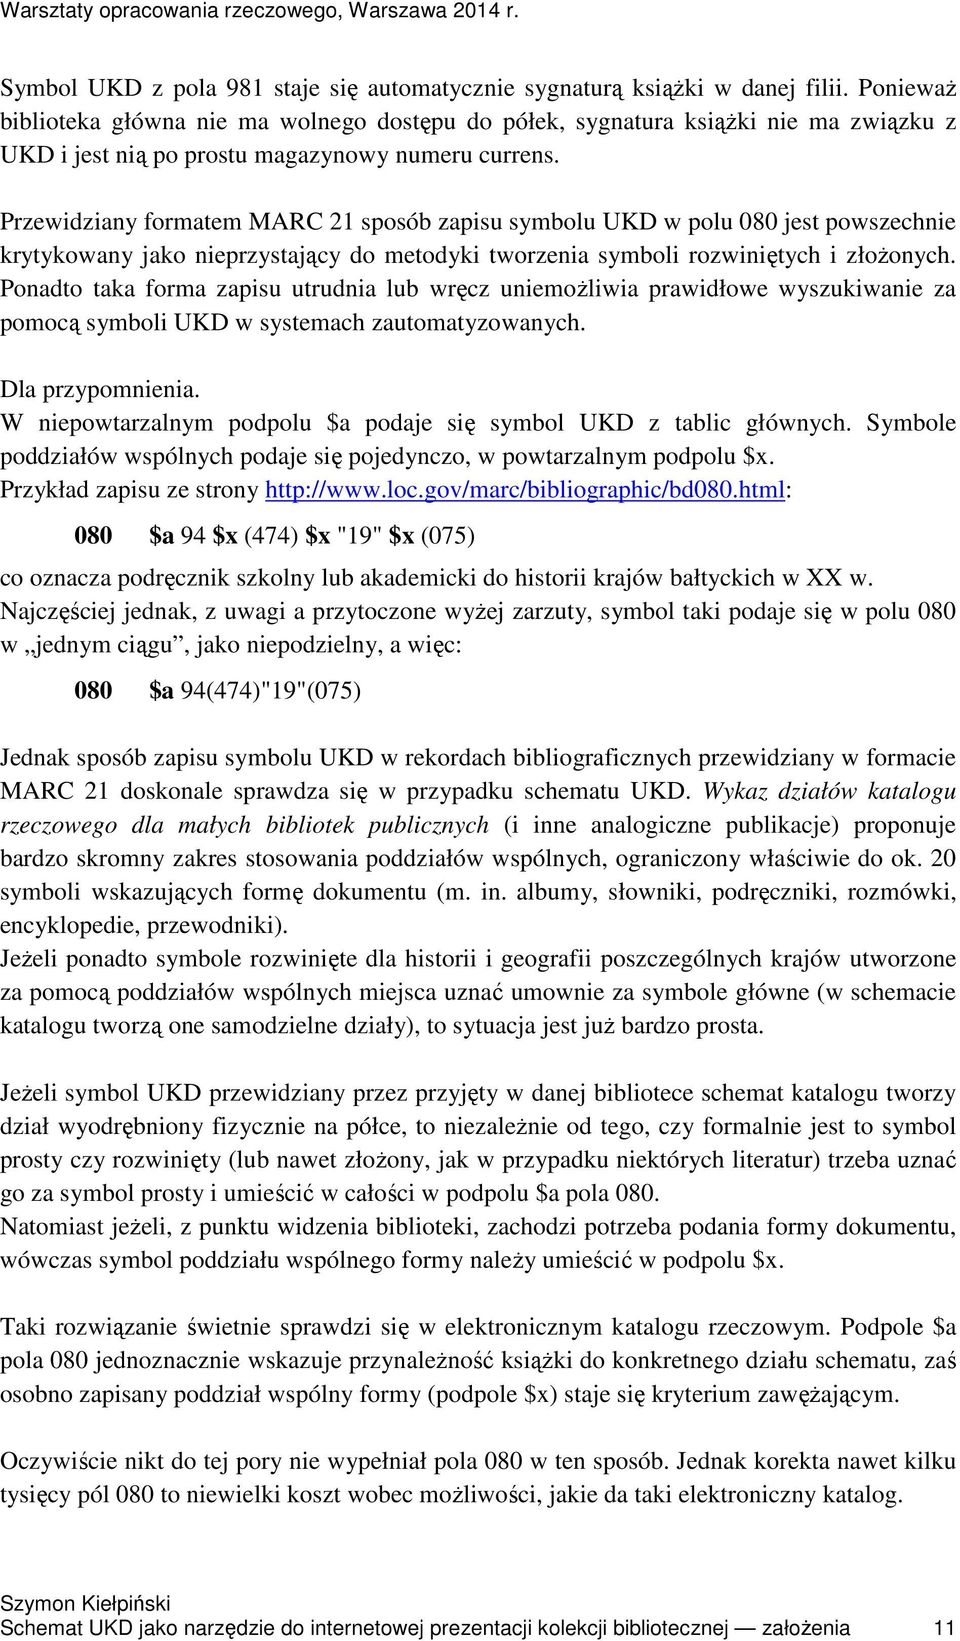 Przewidziany formatem MARC 21 sposób zapisu symbolu UKD w polu 080 jest powszechnie krytykowany jako nieprzystający do metodyki tworzenia symboli rozwiniętych i złożonych.